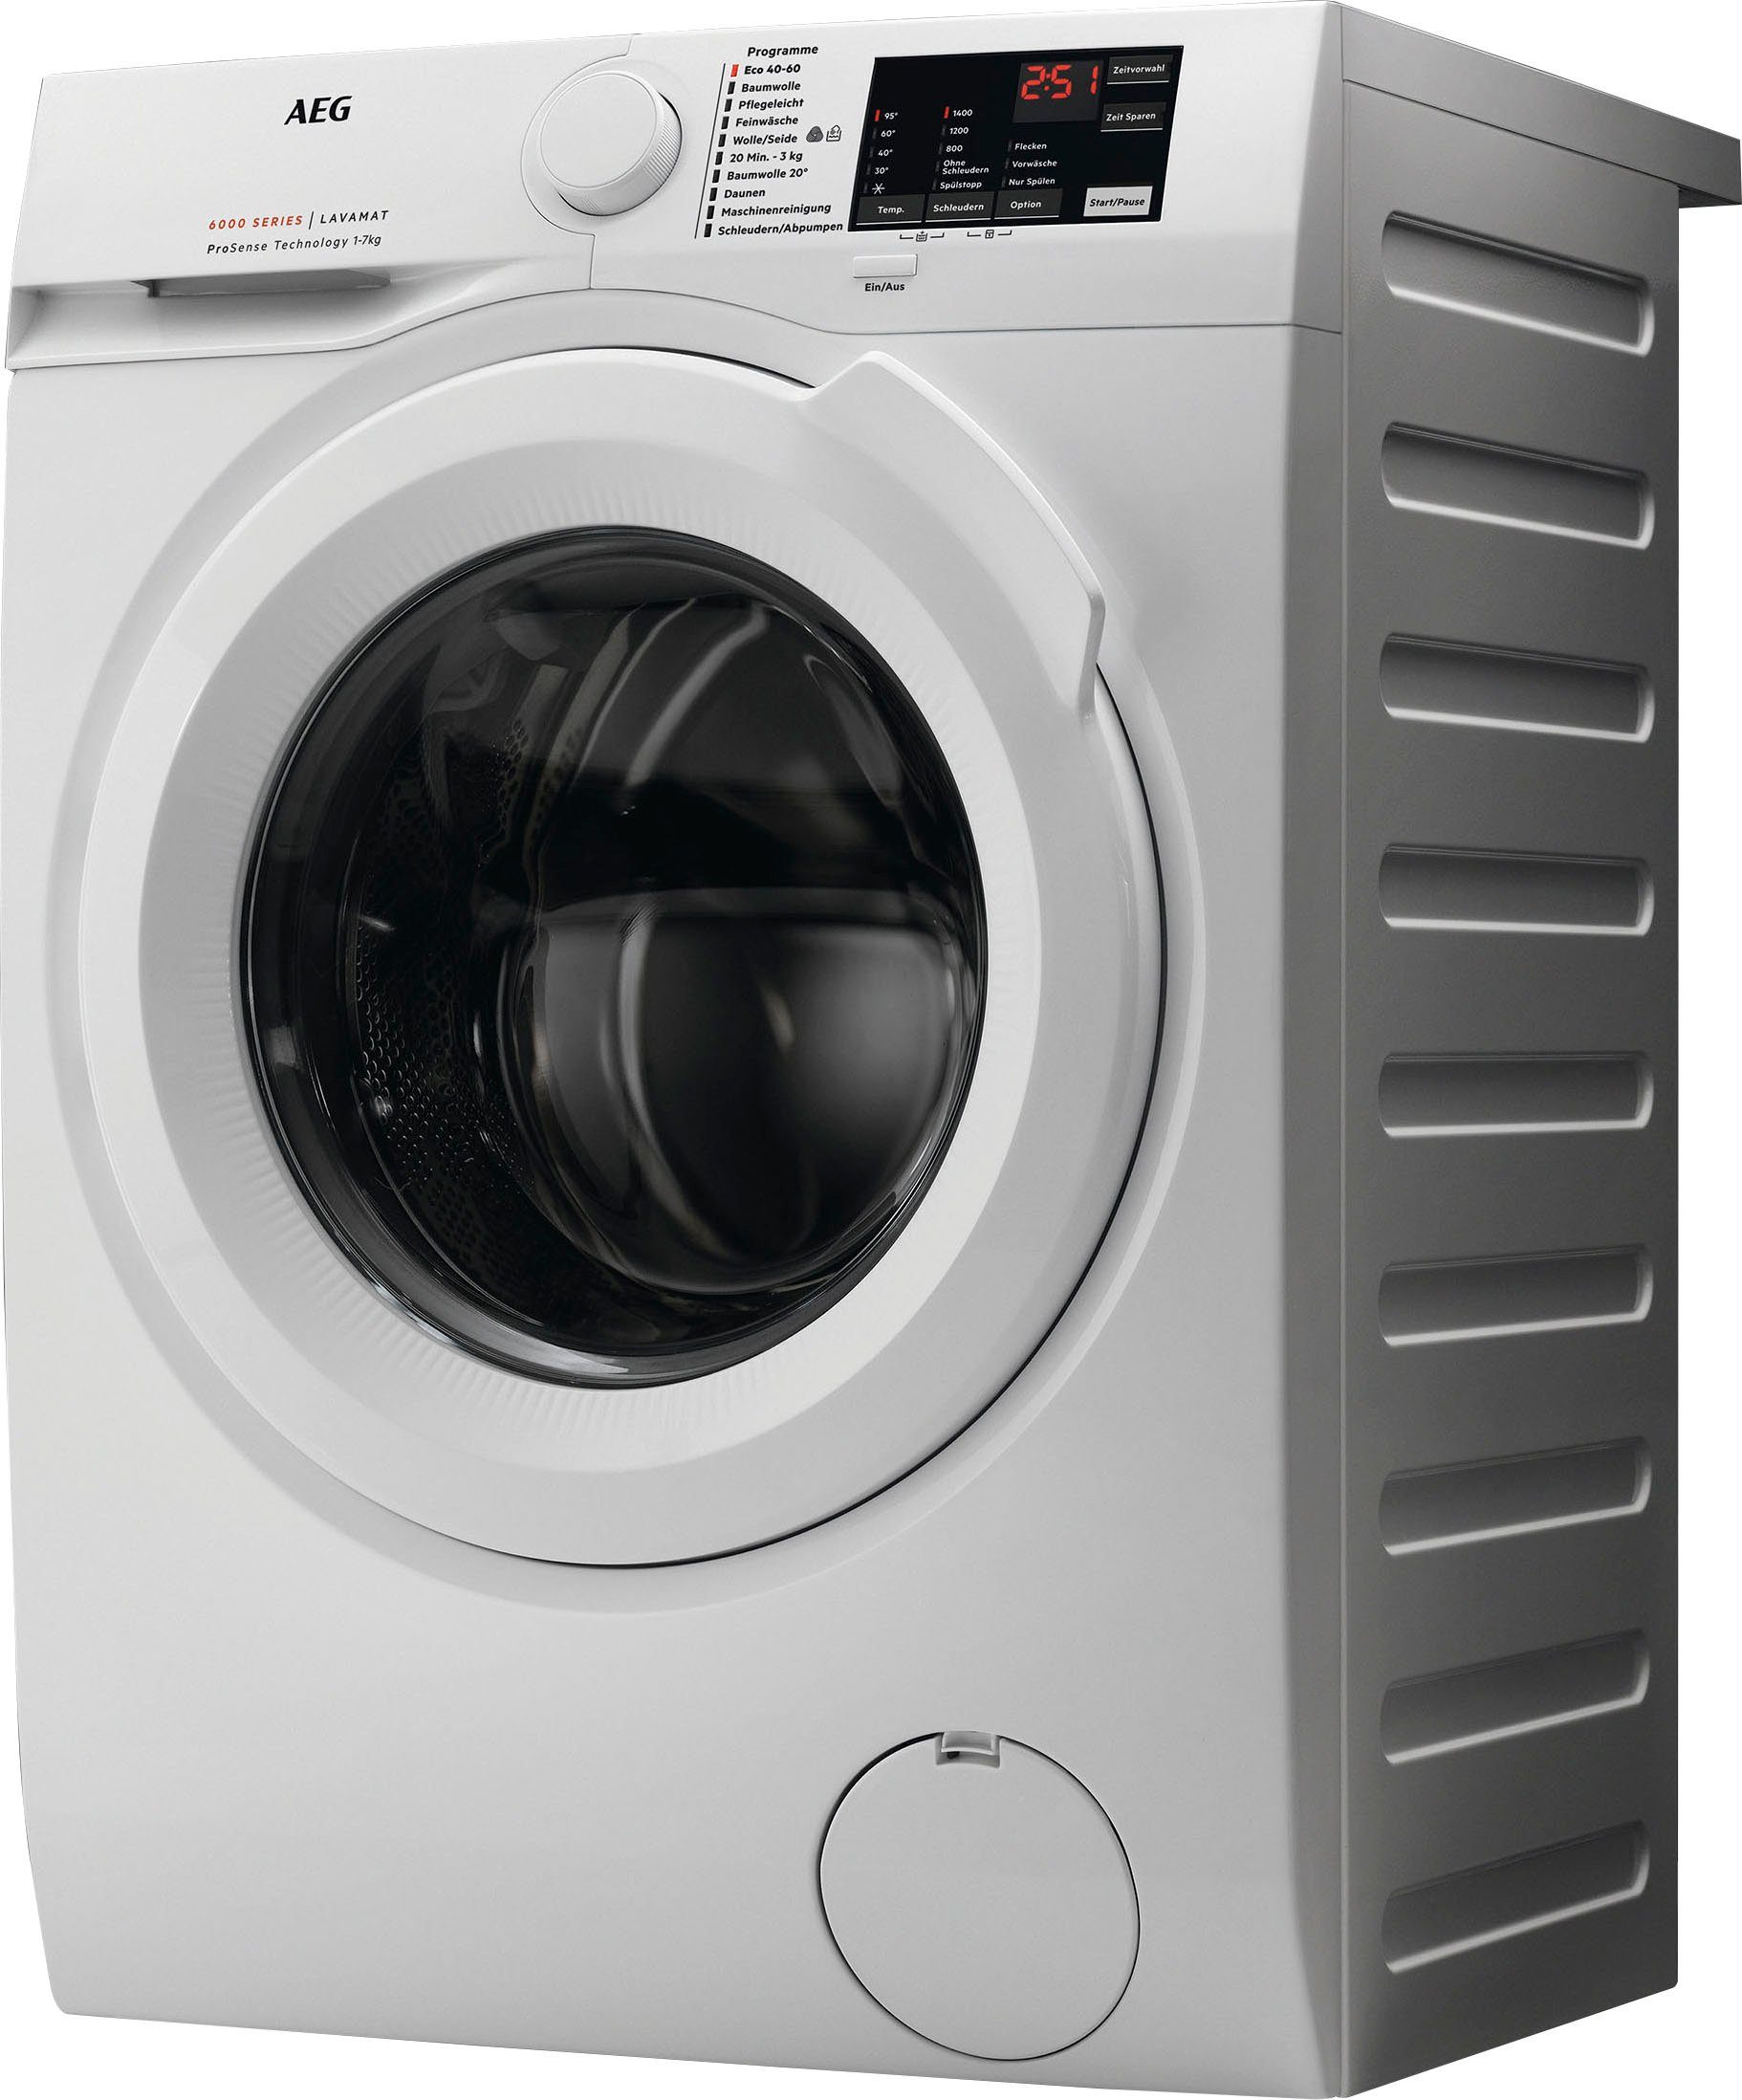 L6FBA50490, Waschmaschine Hygiene-/ kg, 1400 AEG mit U/min, Anti-Allergie 9 Programm Dampf